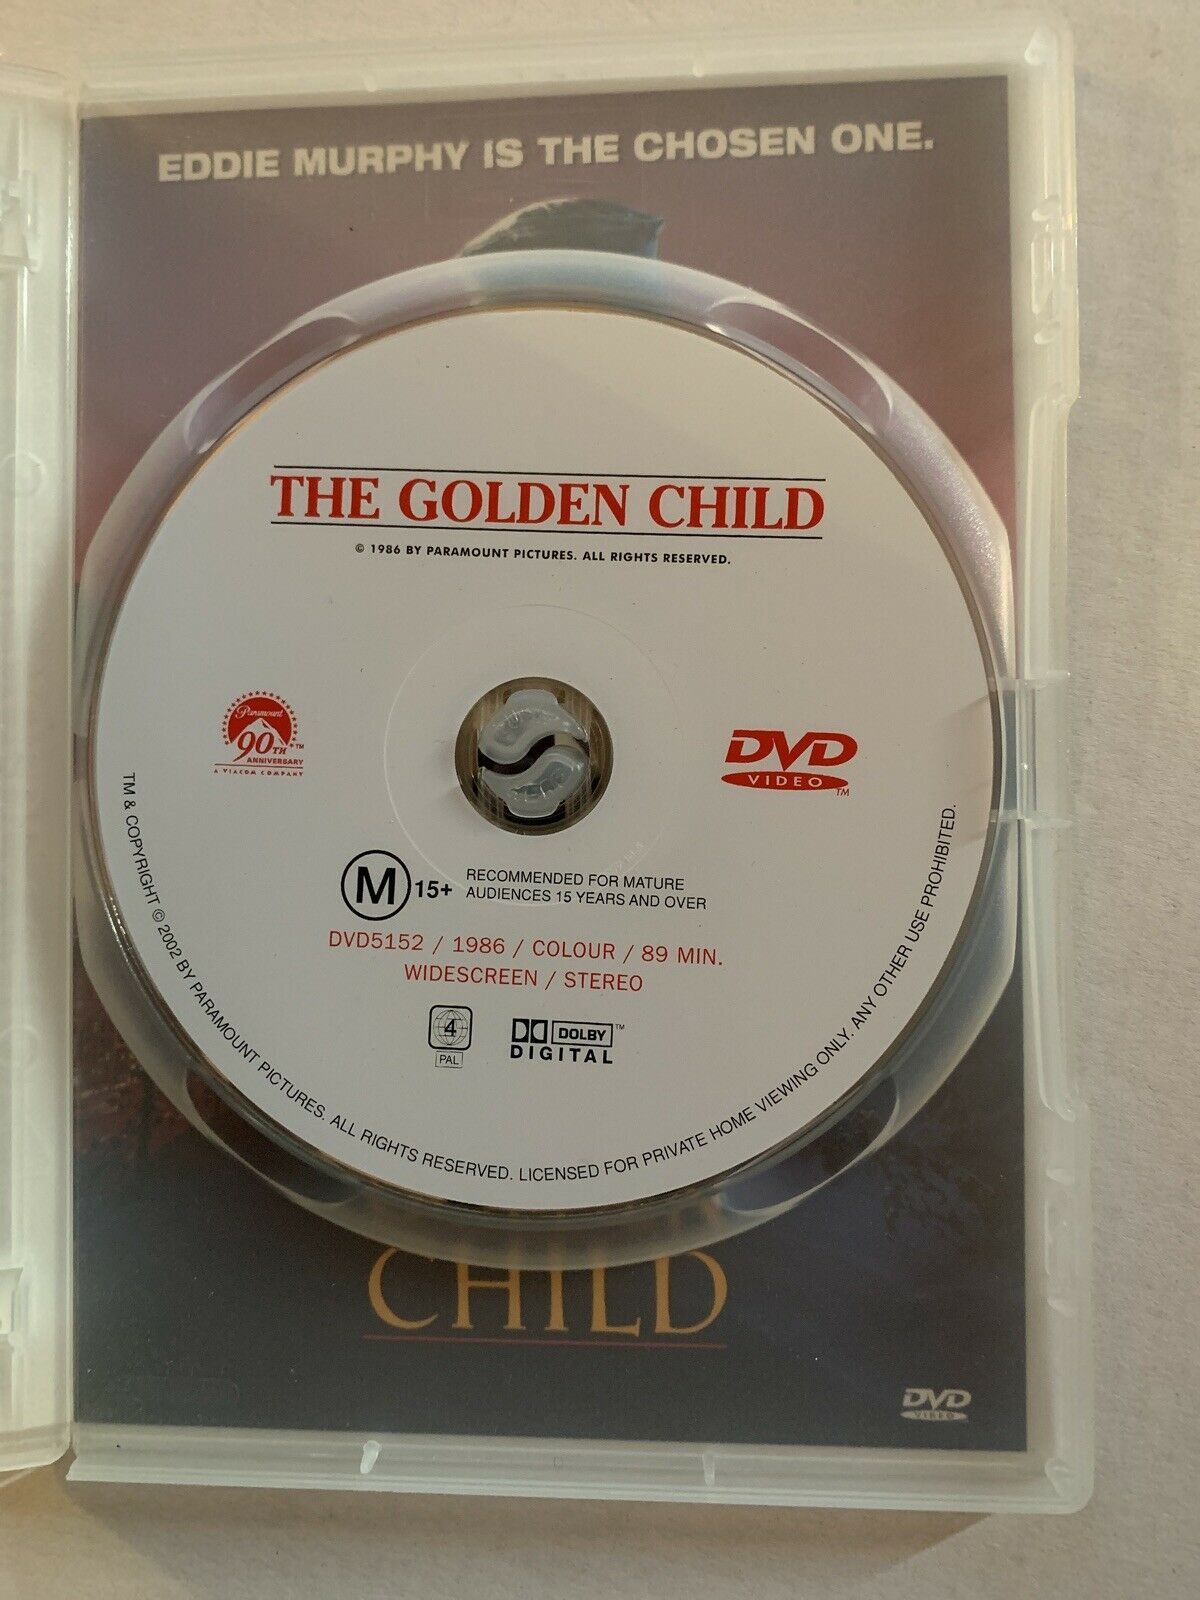 The Golden Child (DVD, 1986) Eddie Murphy, J.L. Reate, Charles Dance. Region 4